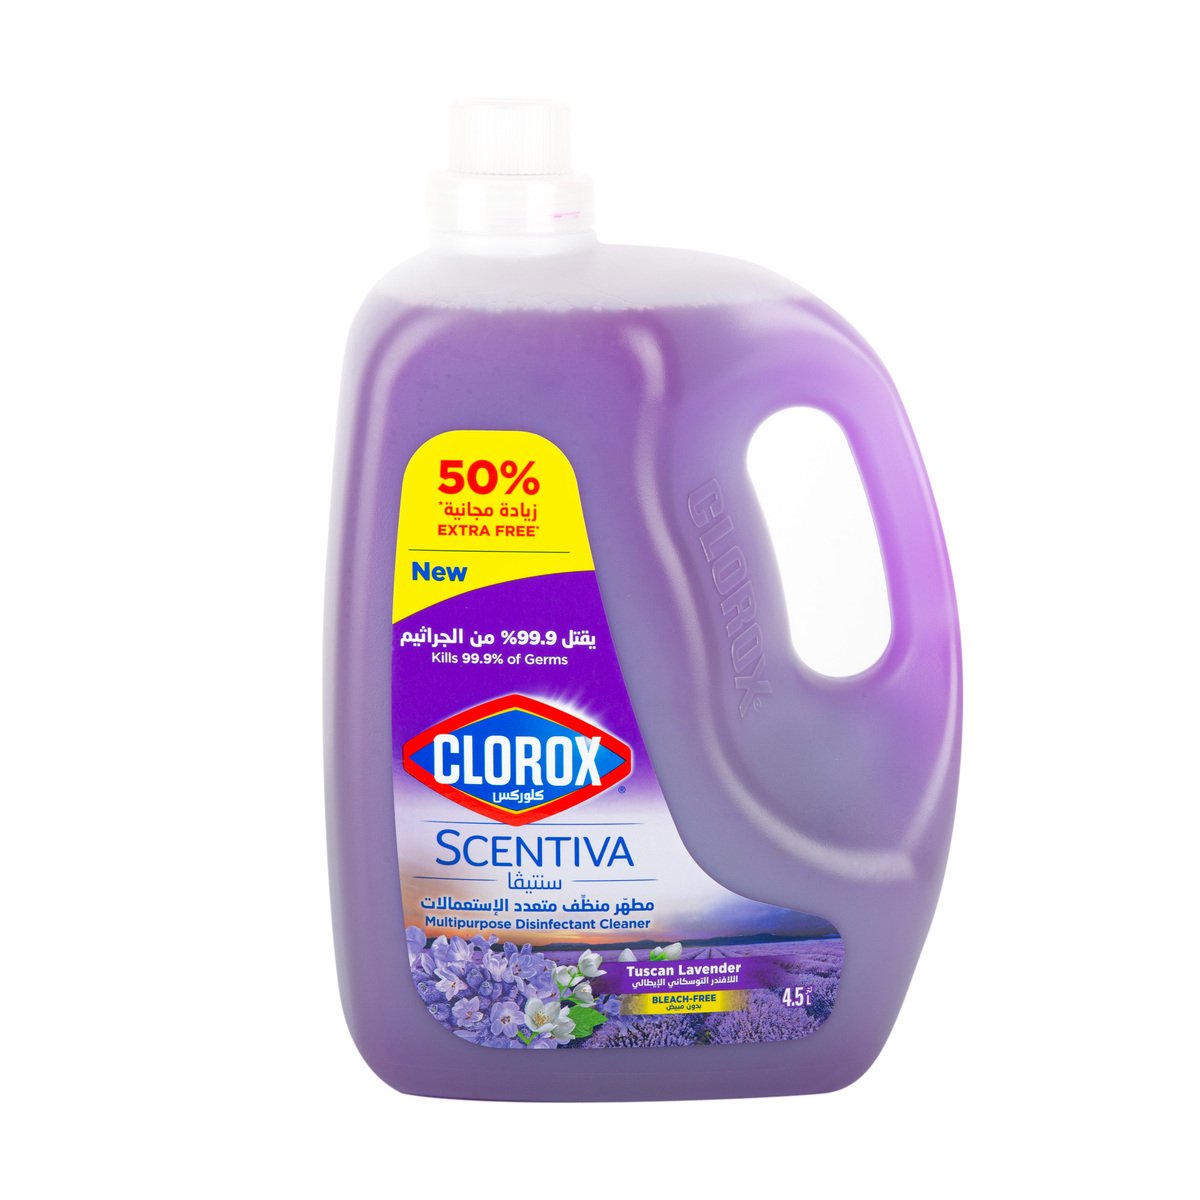 Clorox Scentiva Multipurpose Disinfectant Cleaner Tuscan Lavender 4.5Litre